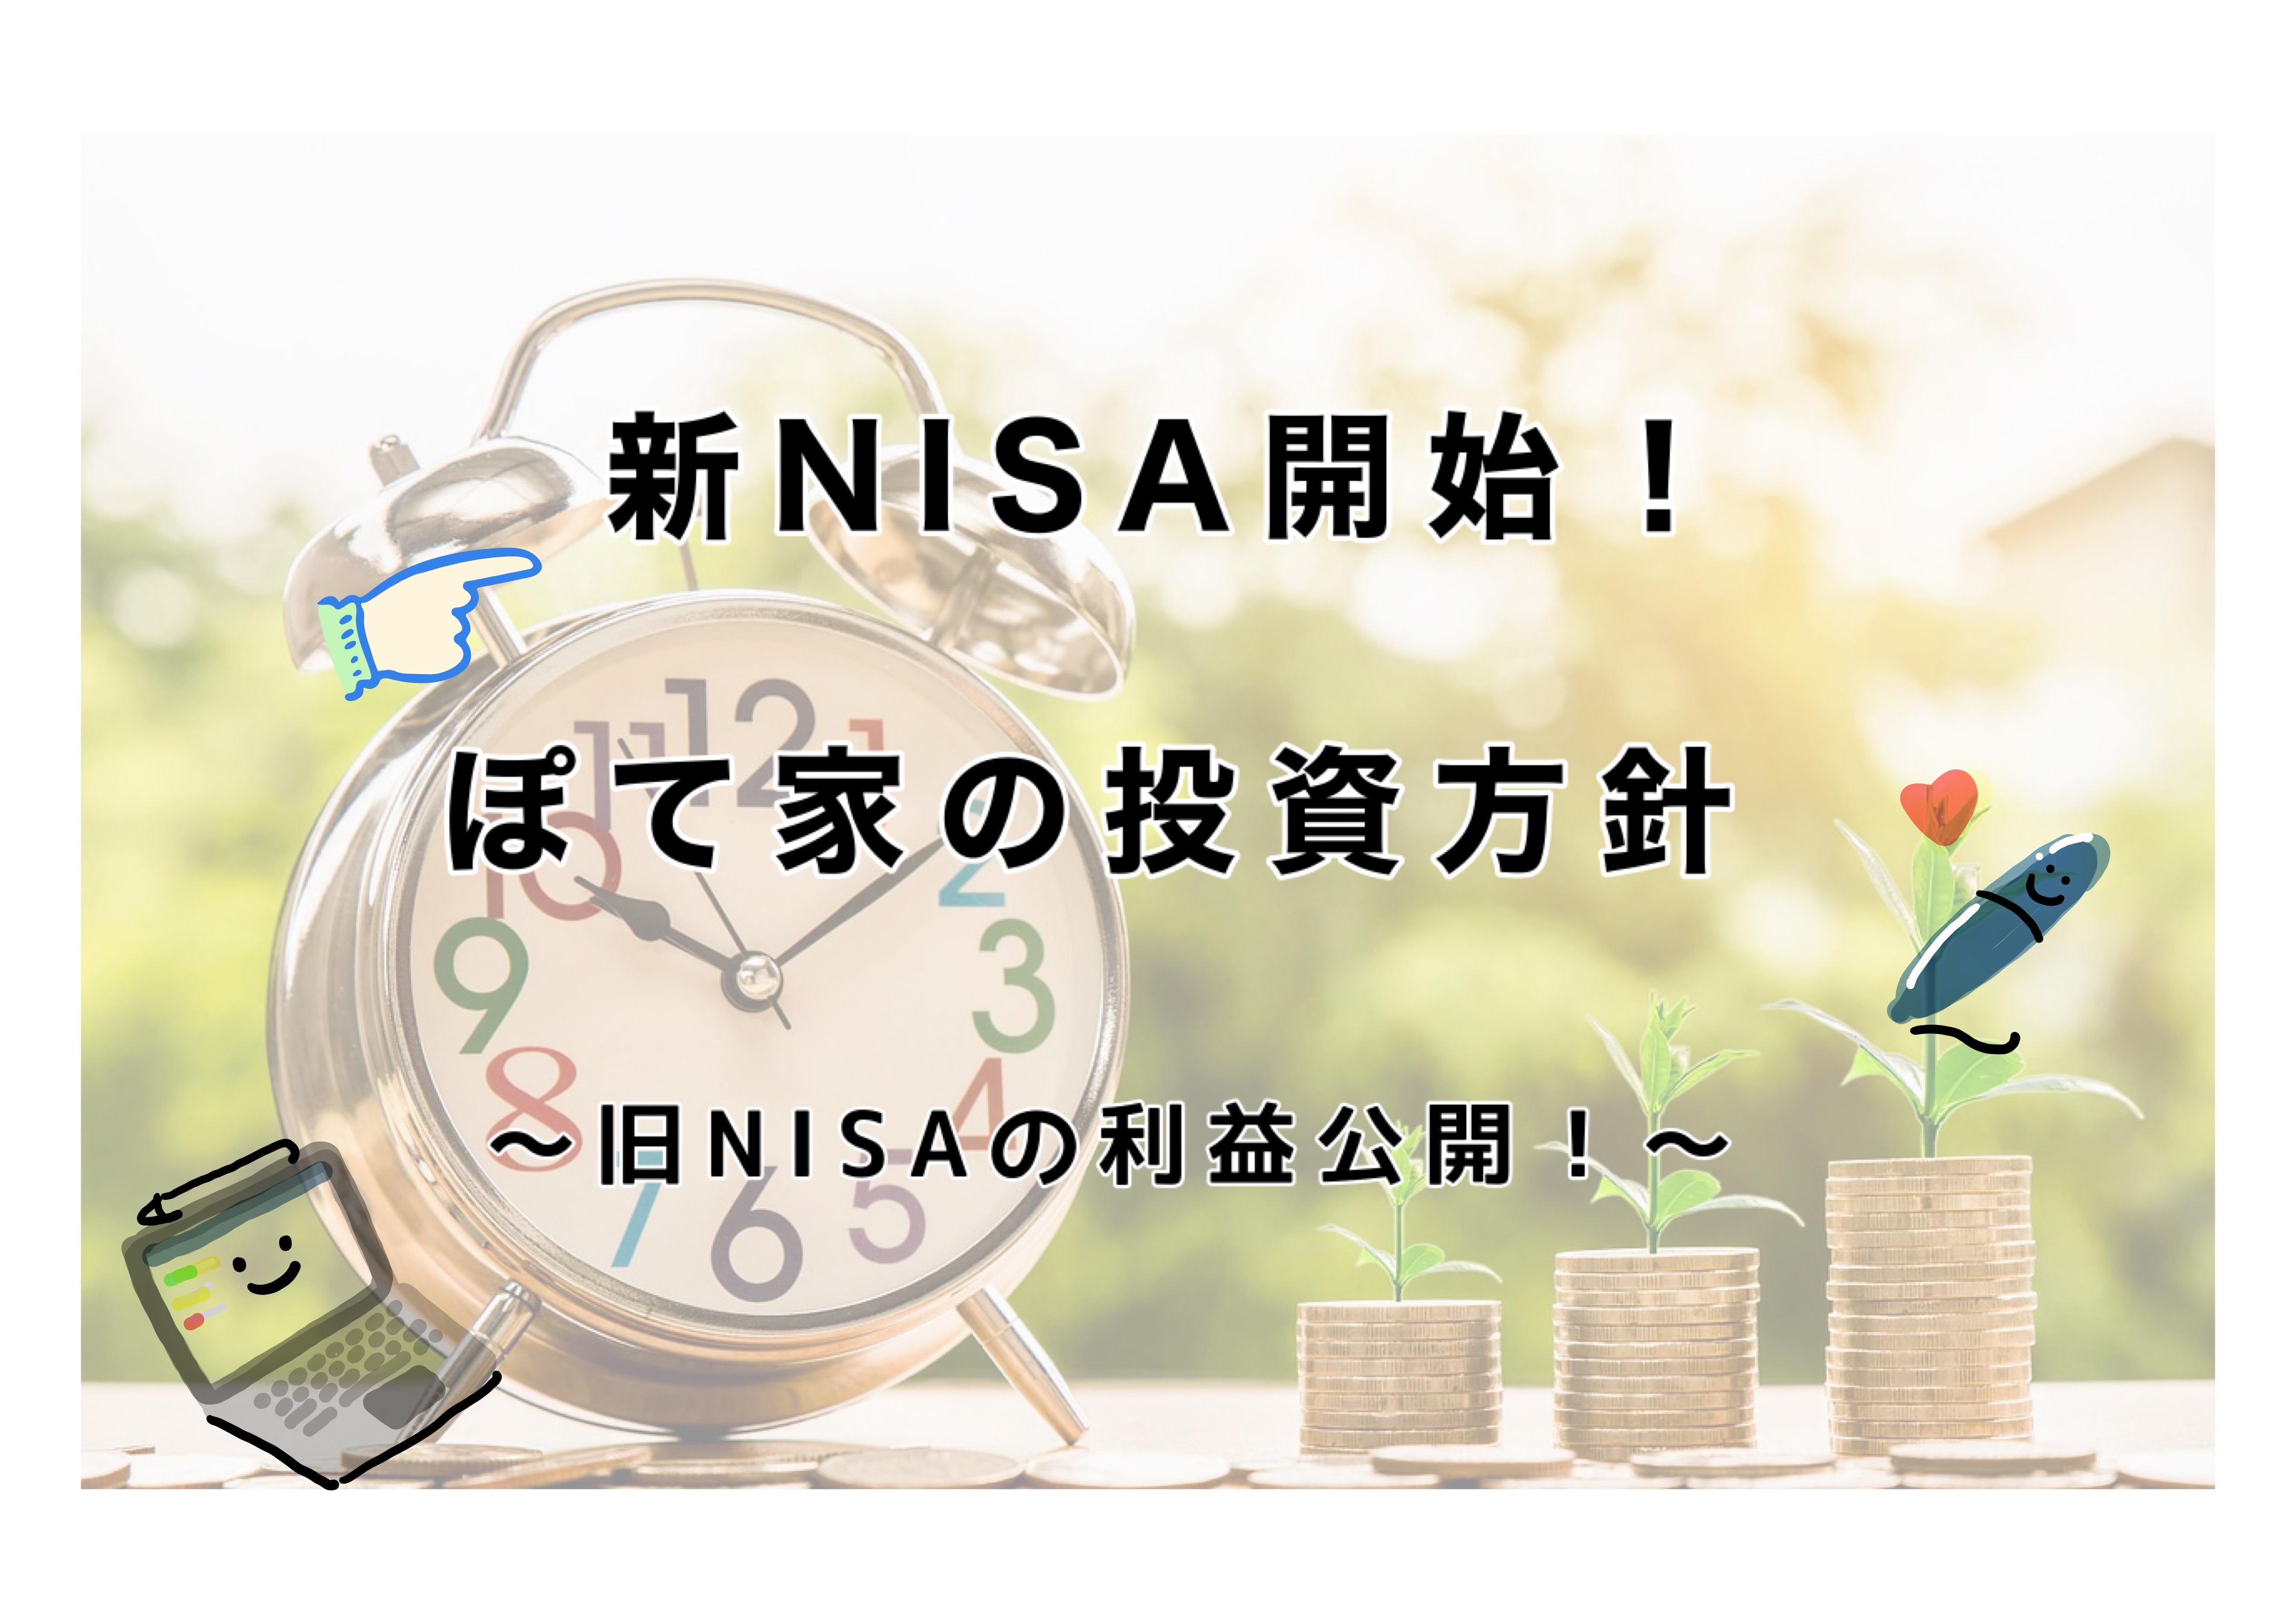 新NISA開始